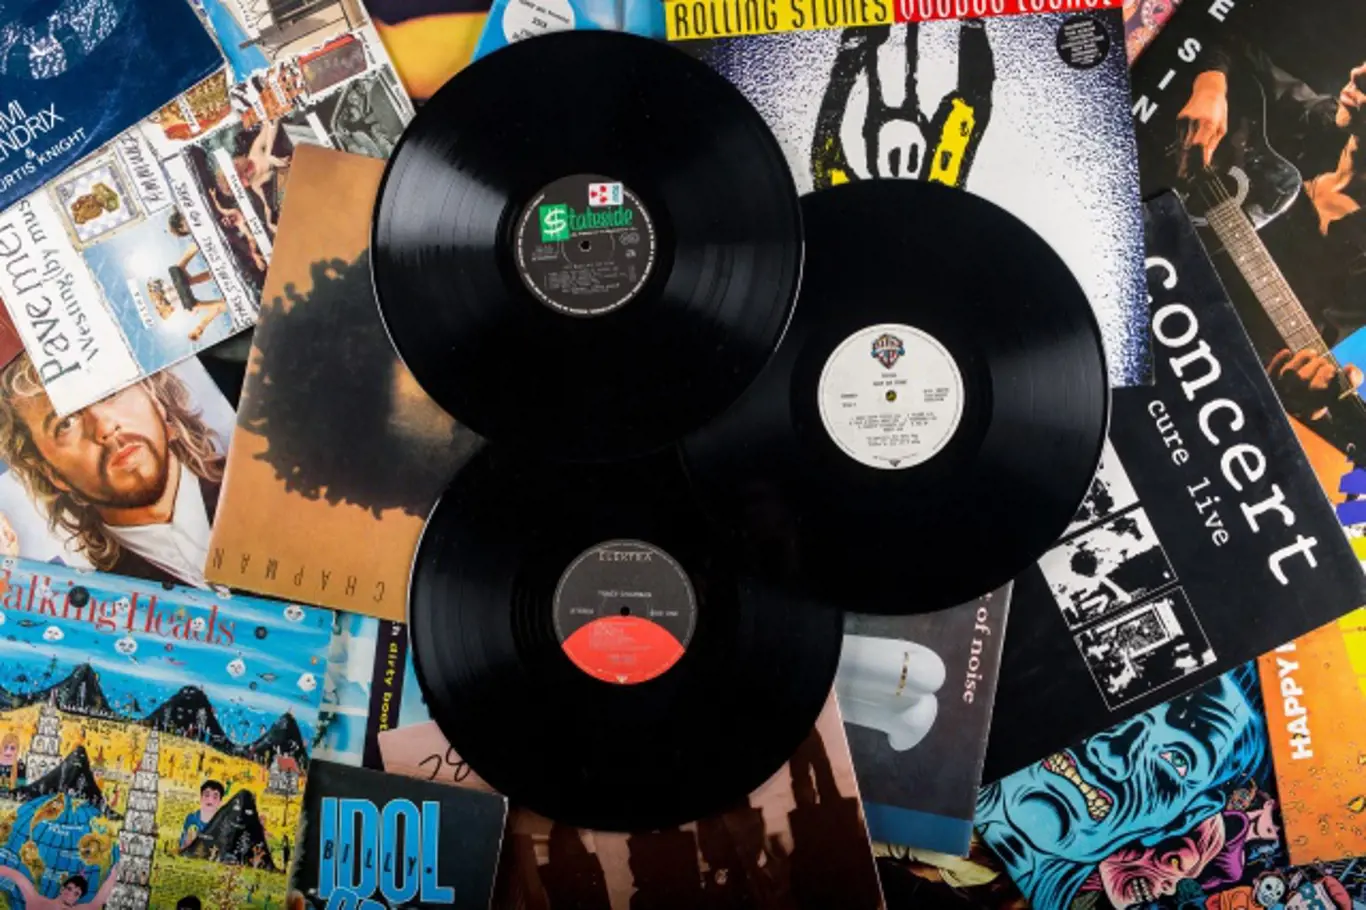 Vinylové desky se stávají čím dál více populárnější